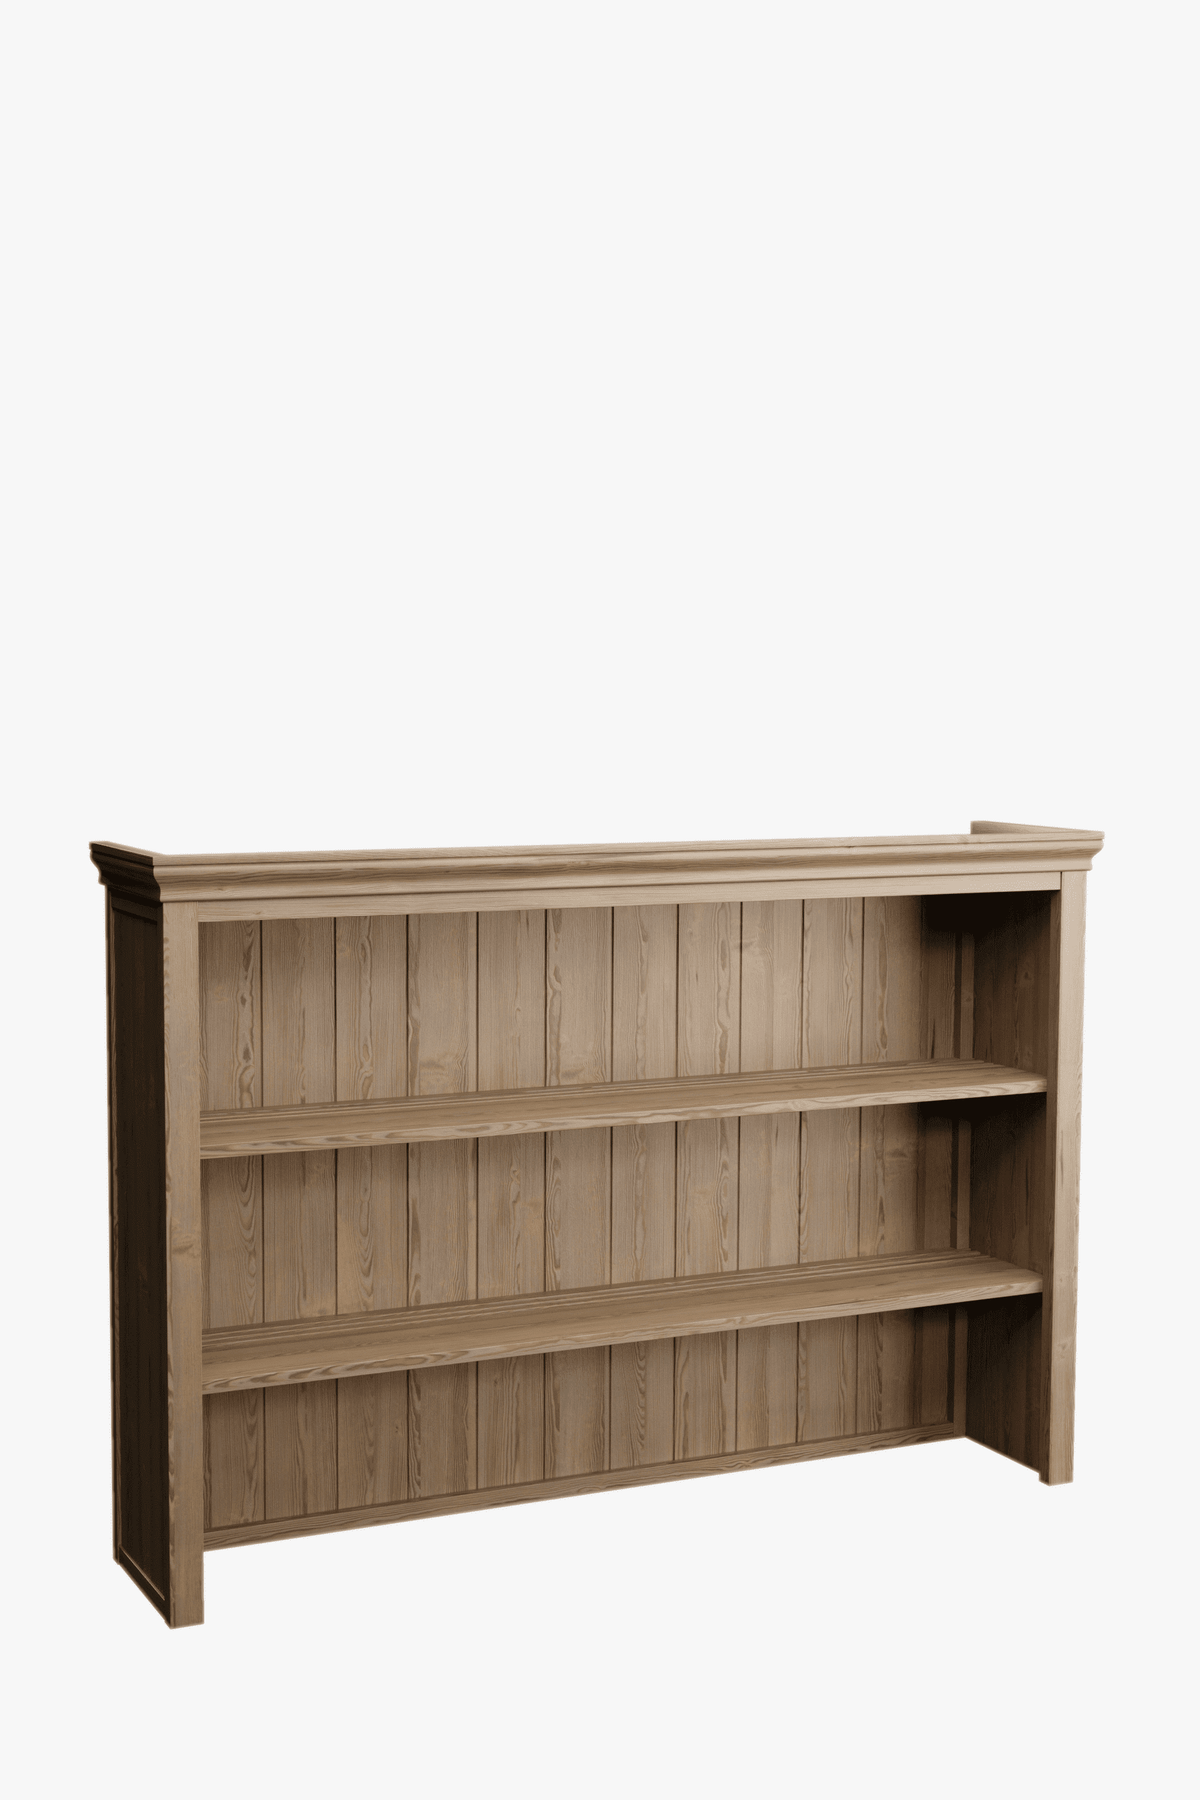 Merrion Dresser Top for 2 Door 3 Drawer Sideboard